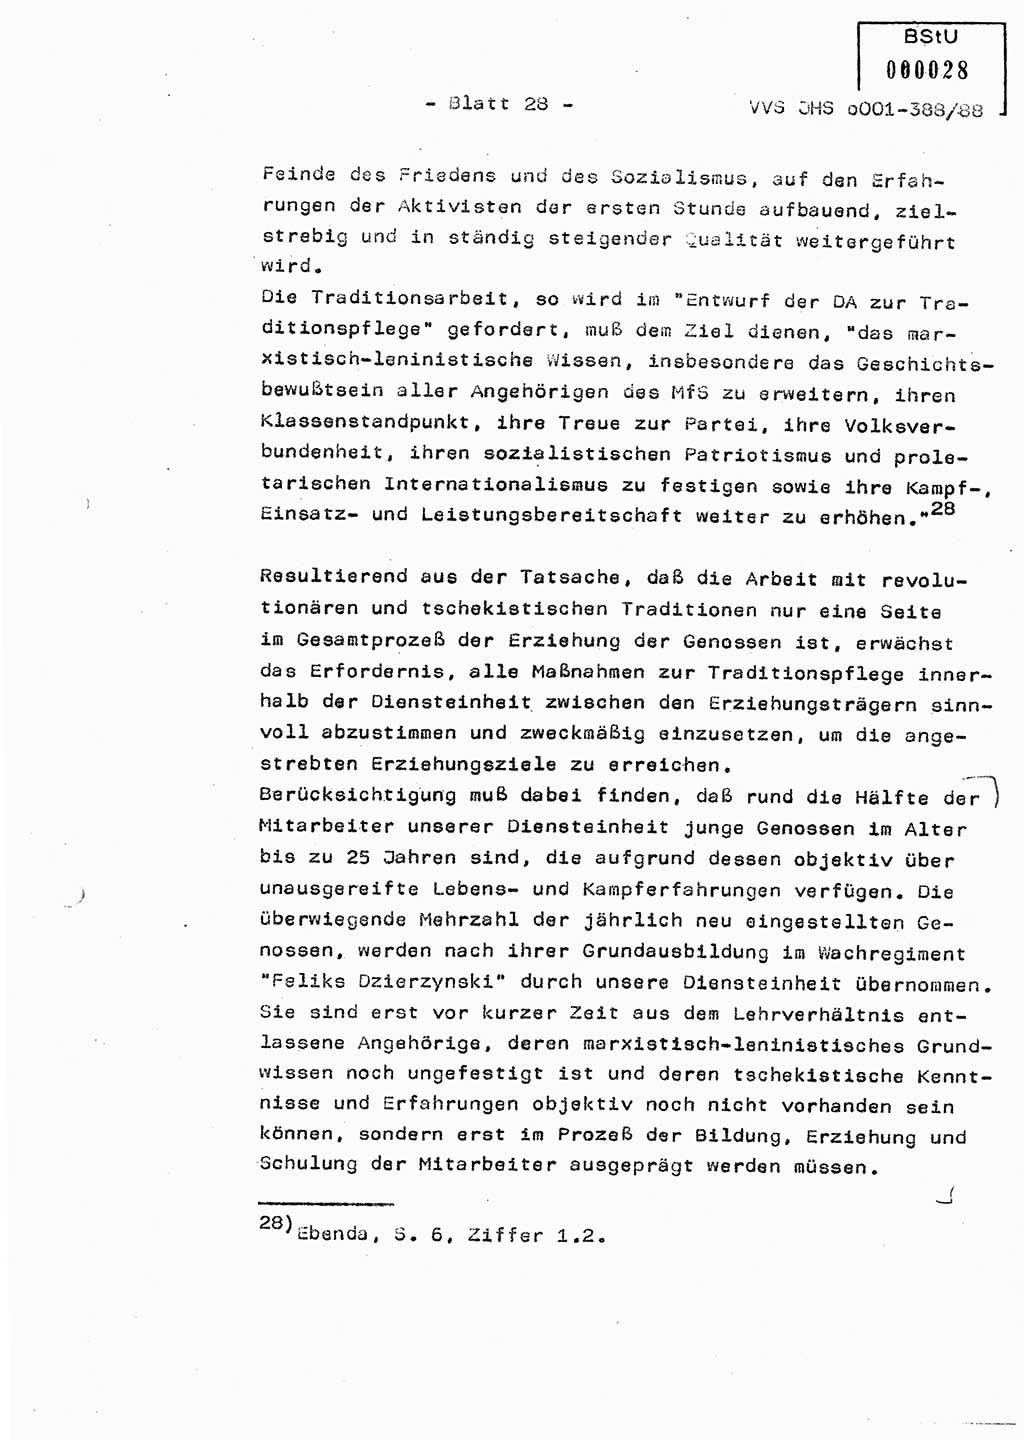 Diplomarbeit Hauptmann Heinz Brixel (Abt. ⅩⅣ), Ministerium für Staatssicherheit (MfS) [Deutsche Demokratische Republik (DDR)], Juristische Hochschule (JHS), Vertrauliche Verschlußsache (VVS) o001-388/88, Potsdam 1988, Blatt 28 (Dipl.-Arb. MfS DDR JHS VVS o001-388/88 1988, Bl. 28)